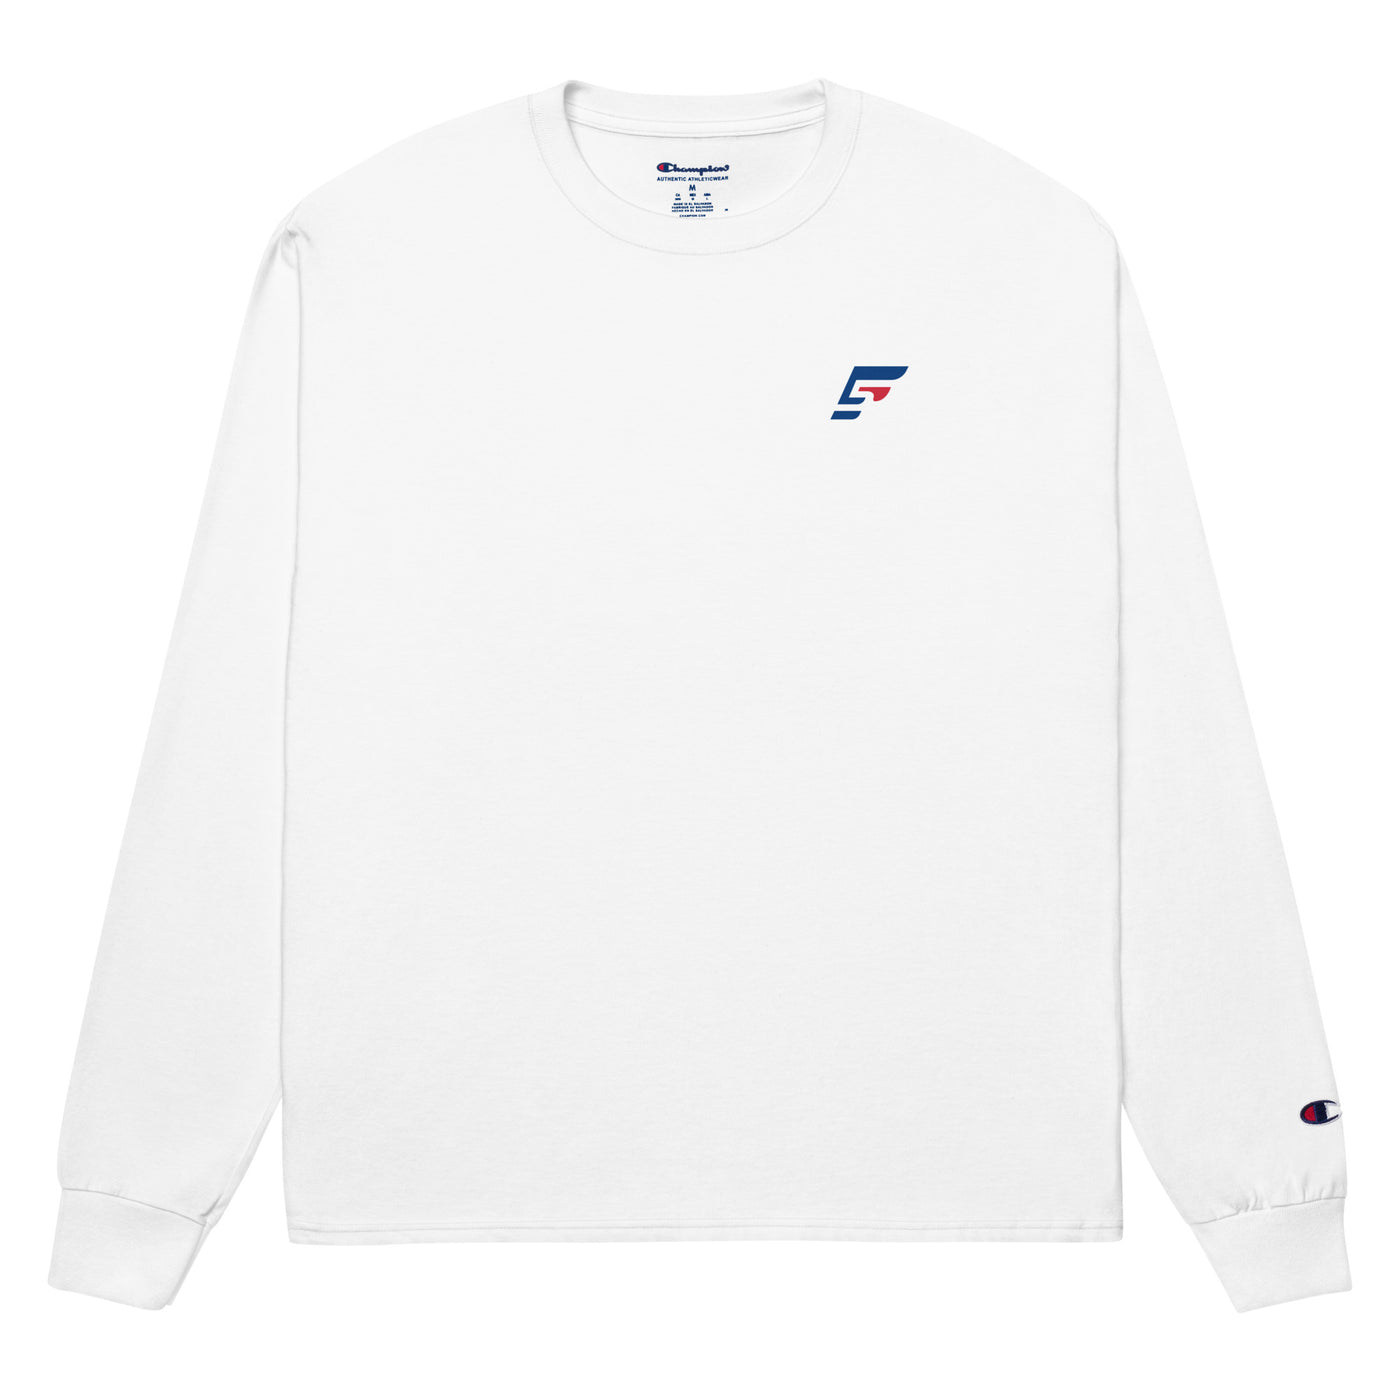 F5 Esports Unisex Champion Long Sleeve Shirt